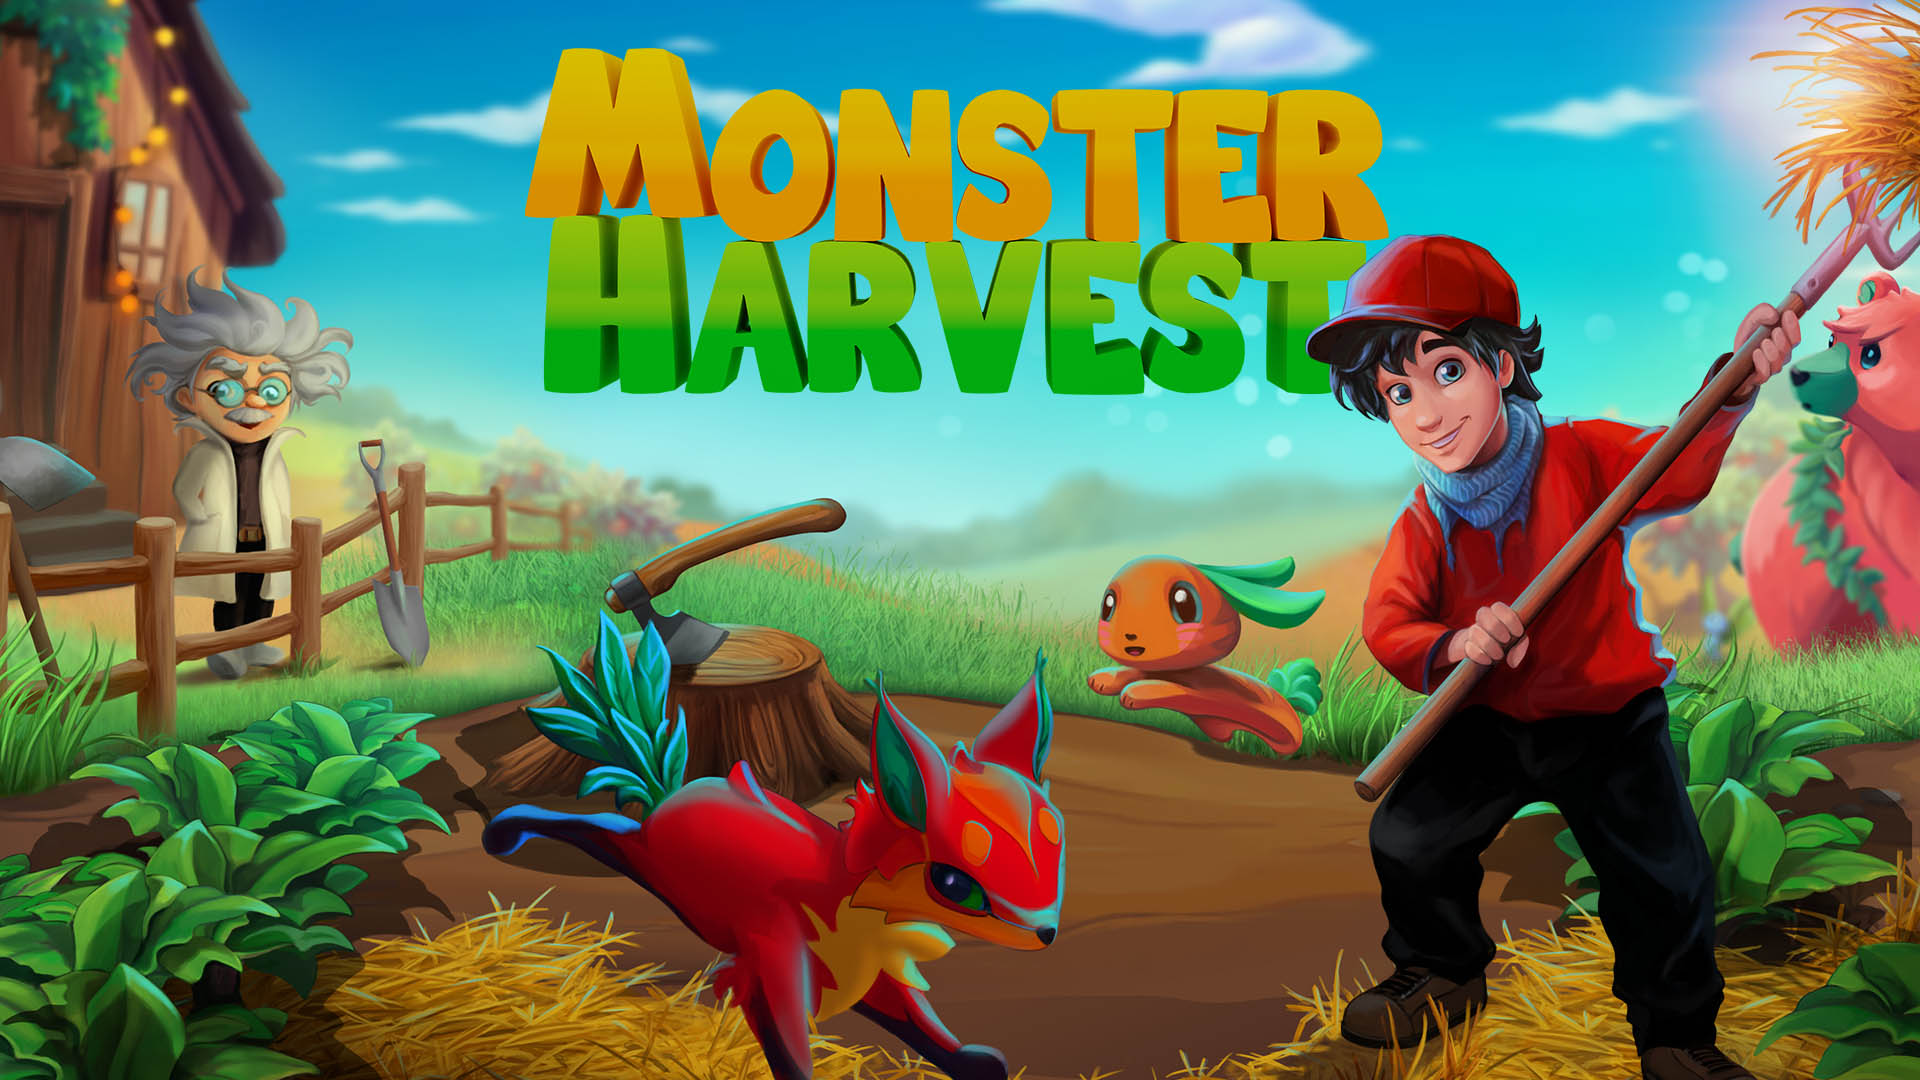 Monster Harvest intro art